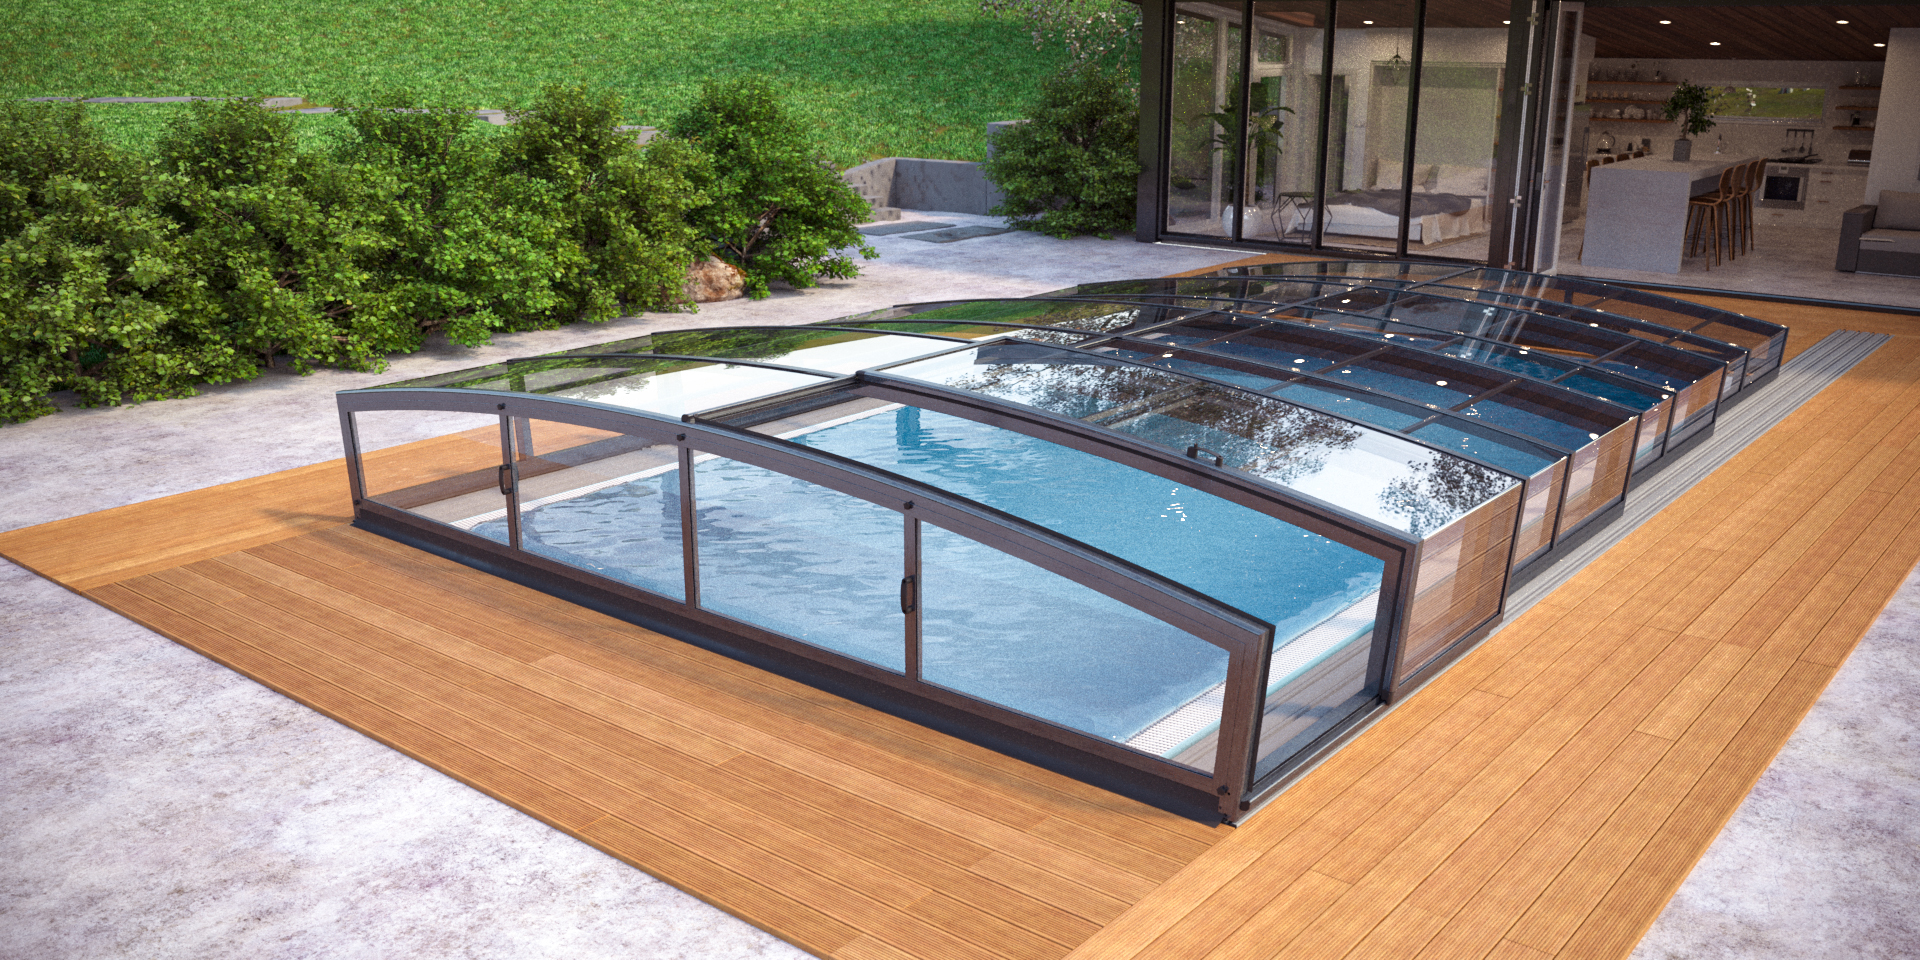 Poolbau Bonn - Bild eines fertigen Pools mit Holzumrahmung